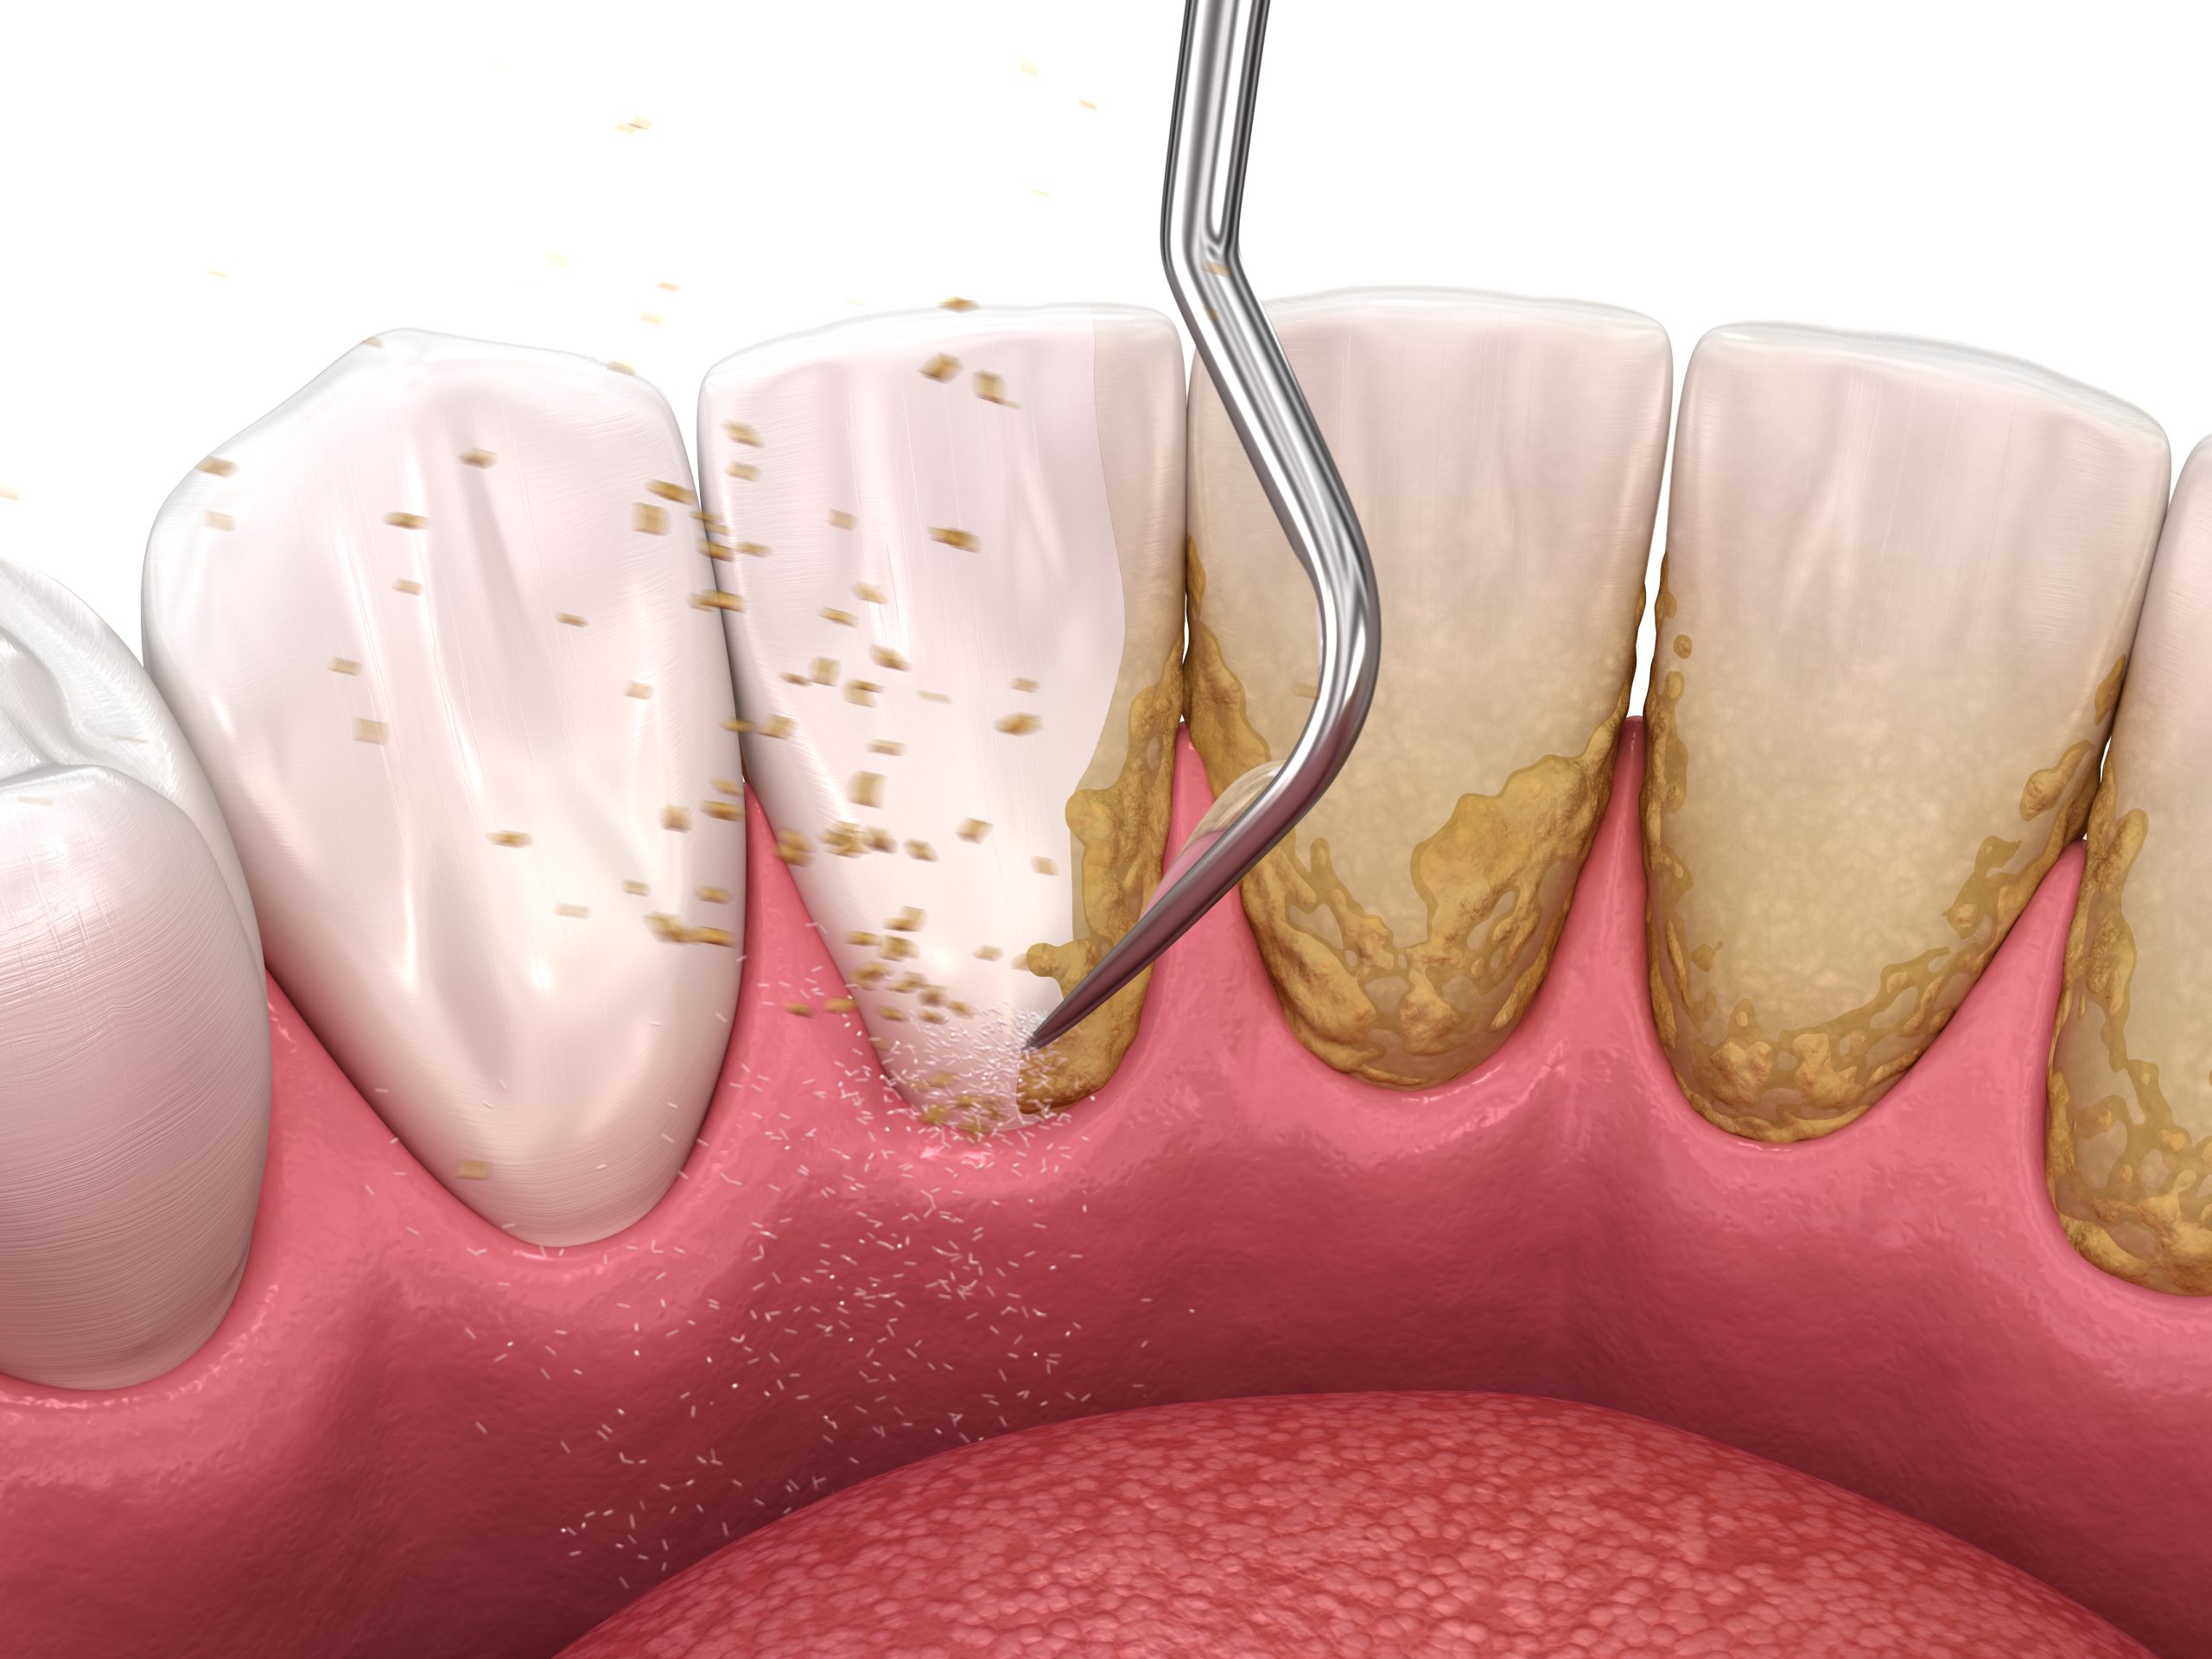 جرمگیری دندان دارای مزایای بسیاری برای حذف پلاک های دندانی